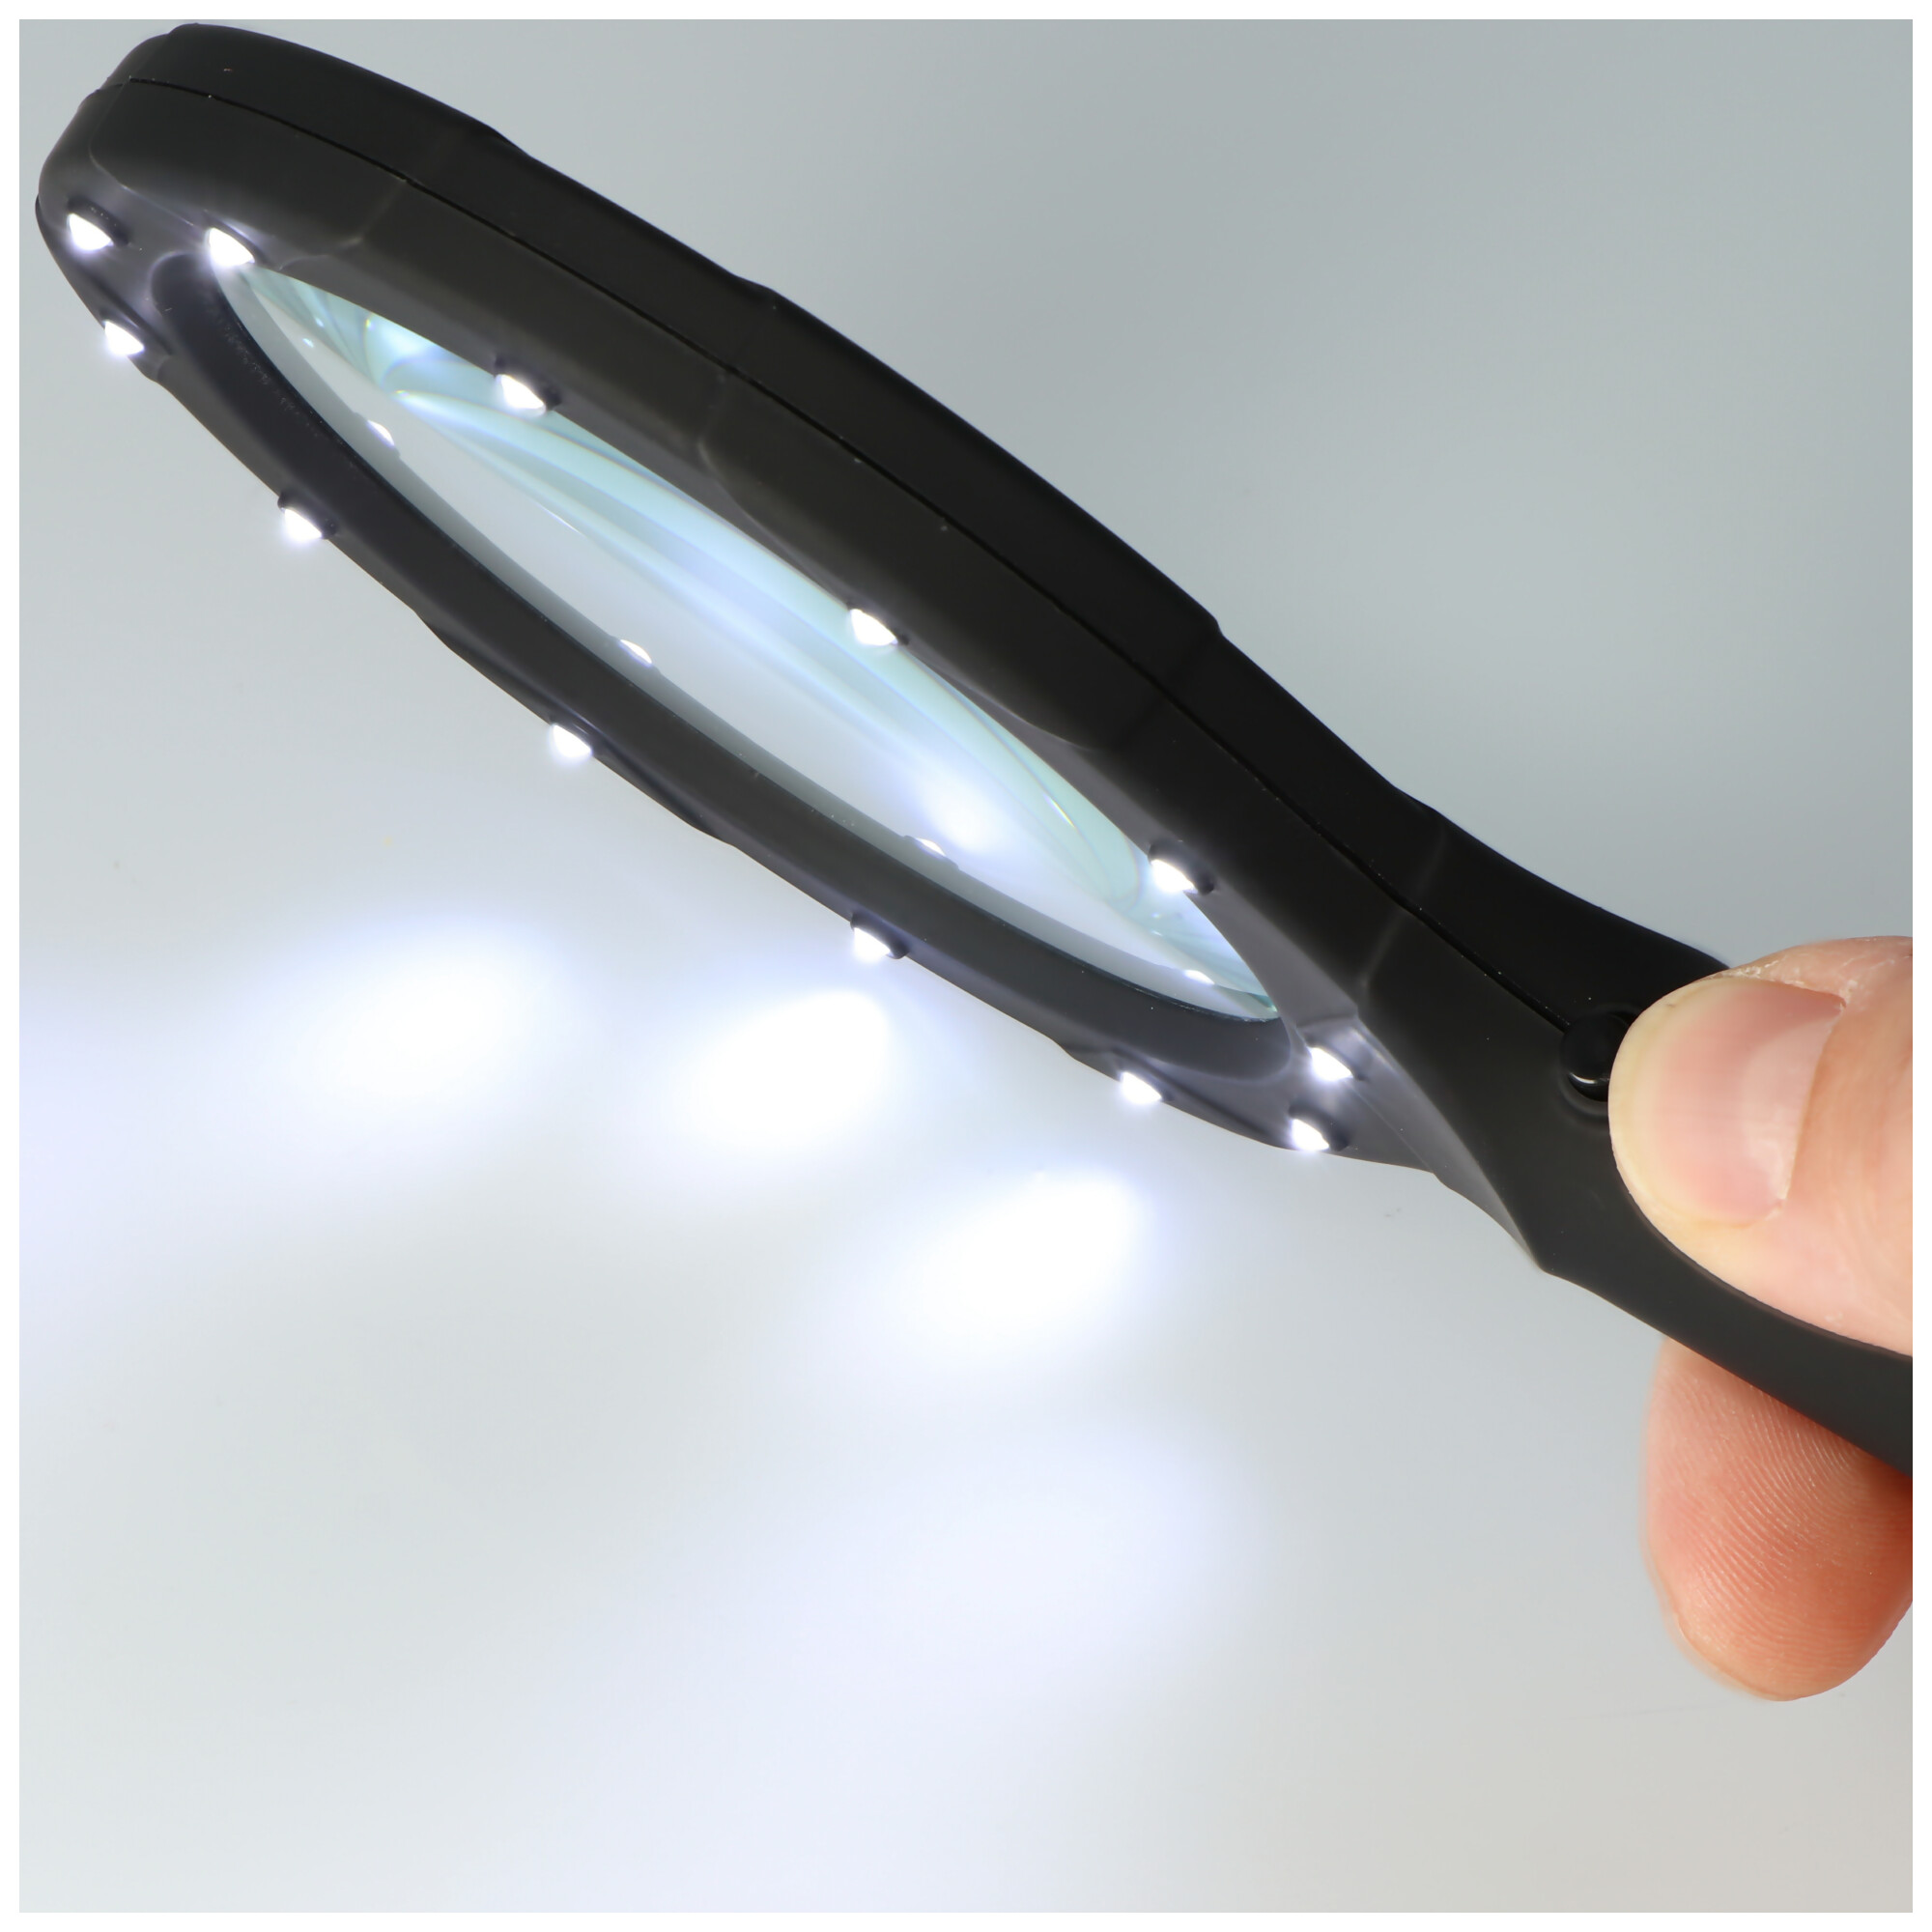 Lupe mit LED-Beleuchtung und 3fach Vergrößerung mit 12 LEDs, IN287, ideal geeignet zum Lesen von Zeitungen, Zeitschriften, Bücher, Karten etc., Lieferung ohne Batterien